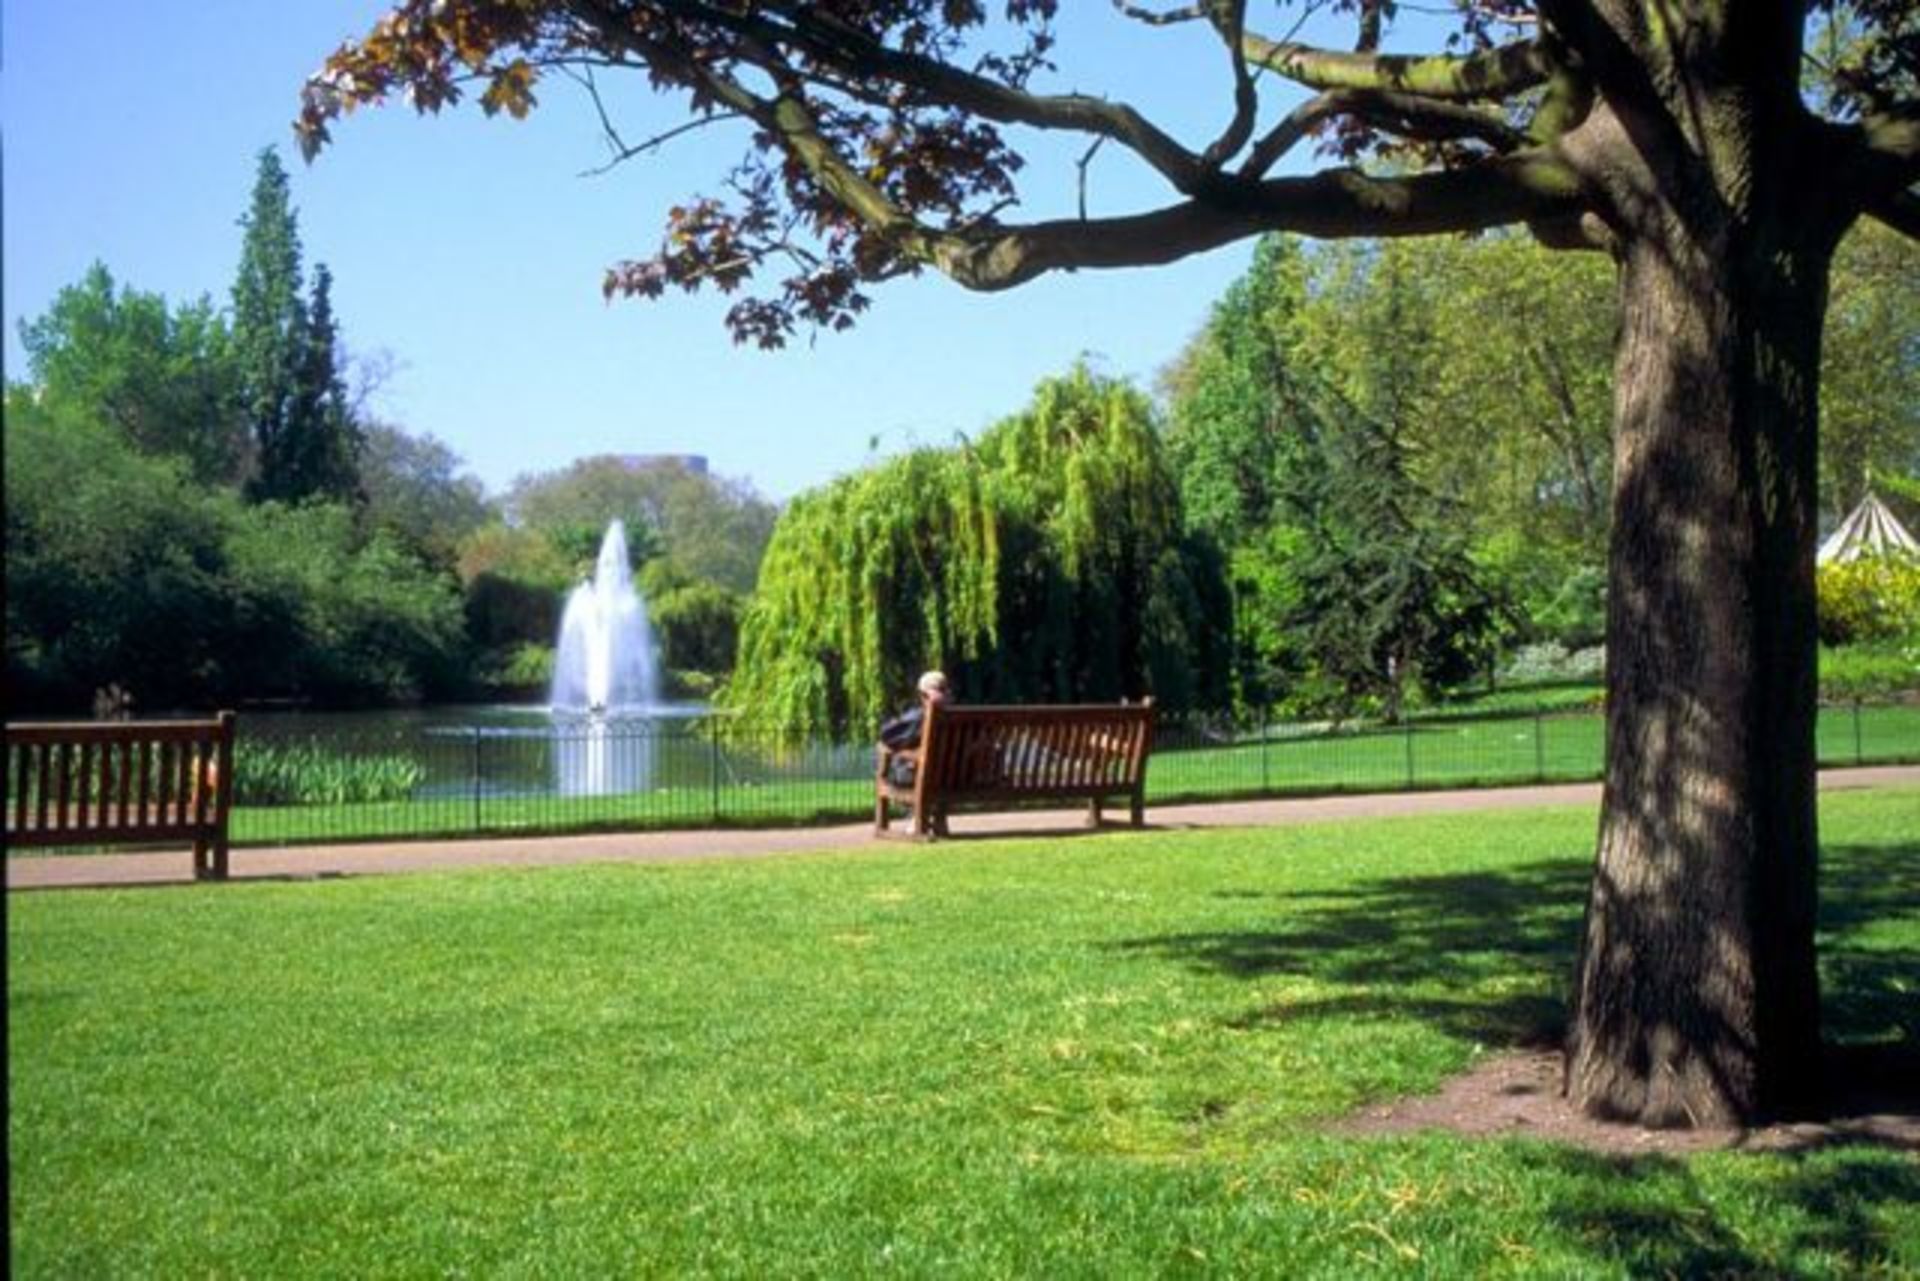 Парки в реальной жизни. Гайд-парк (Hyde Park), Лондон. Хайд парк в Лондоне. Грин парк Лондон. Парк в Лондоне гайд парк.